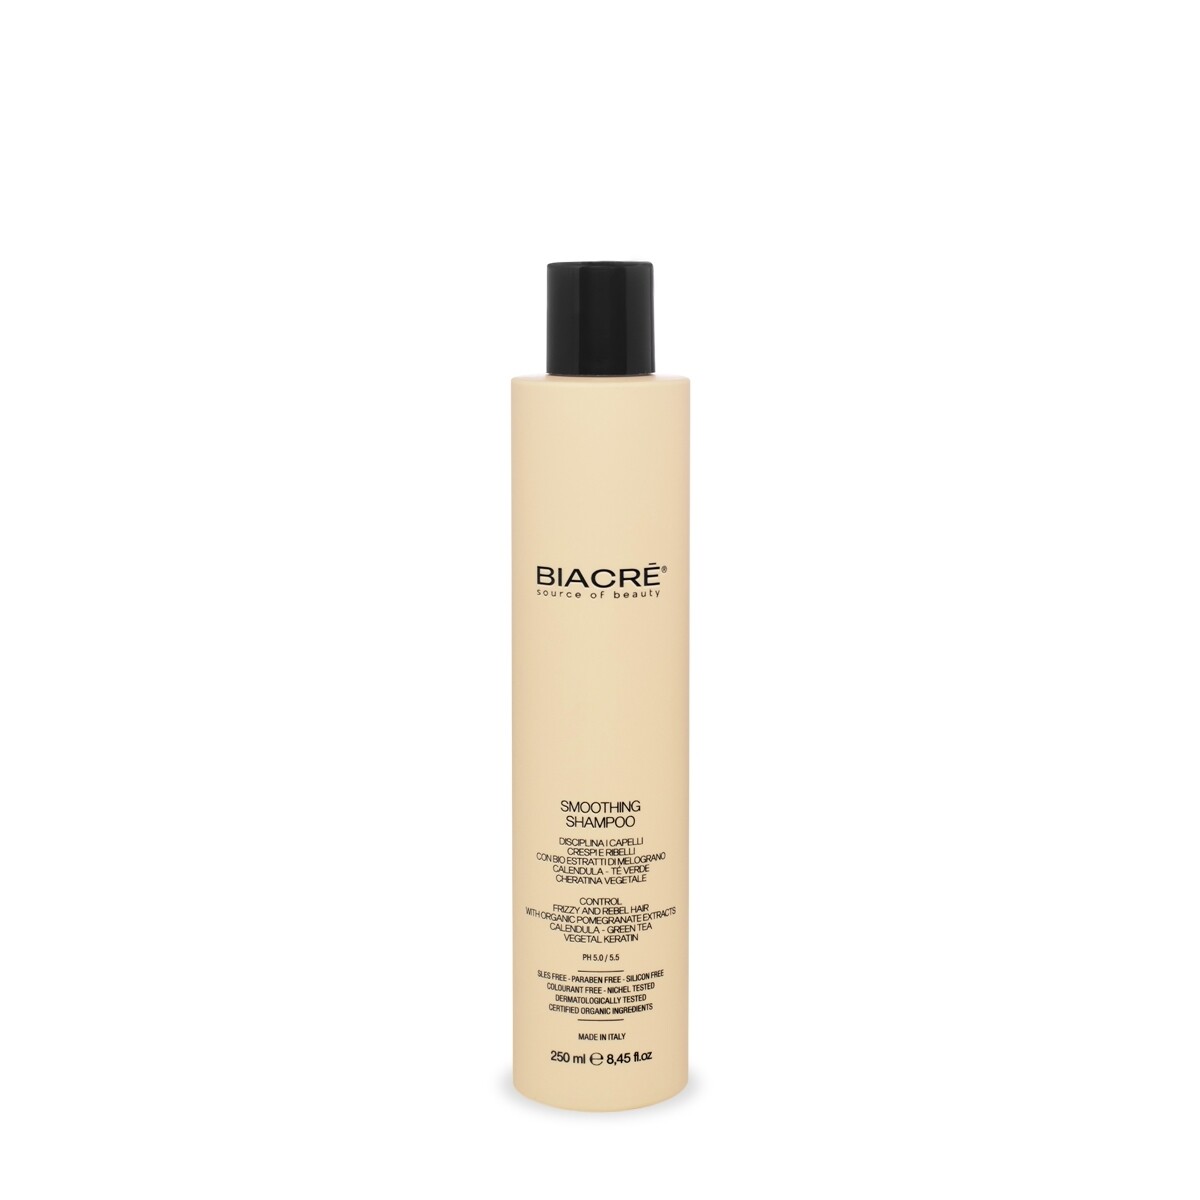 Biacre' Smoothing Shampoo